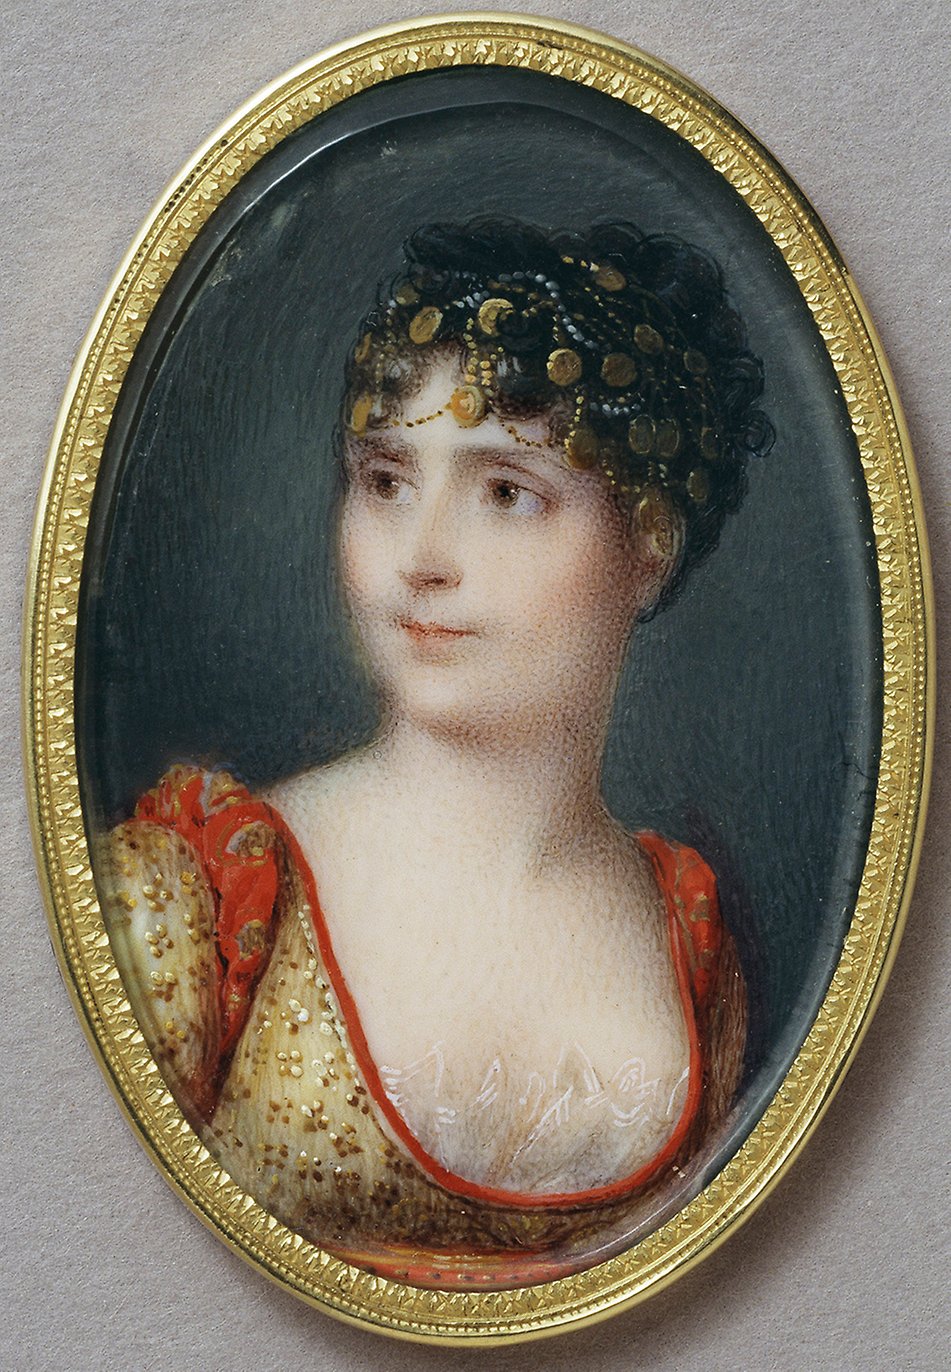 Porträtt av Kejsarinnan Joséphine, Napoleons I:s första gemål. Miniatyren är målad av Jean-Baptiste Isabey år 1806.